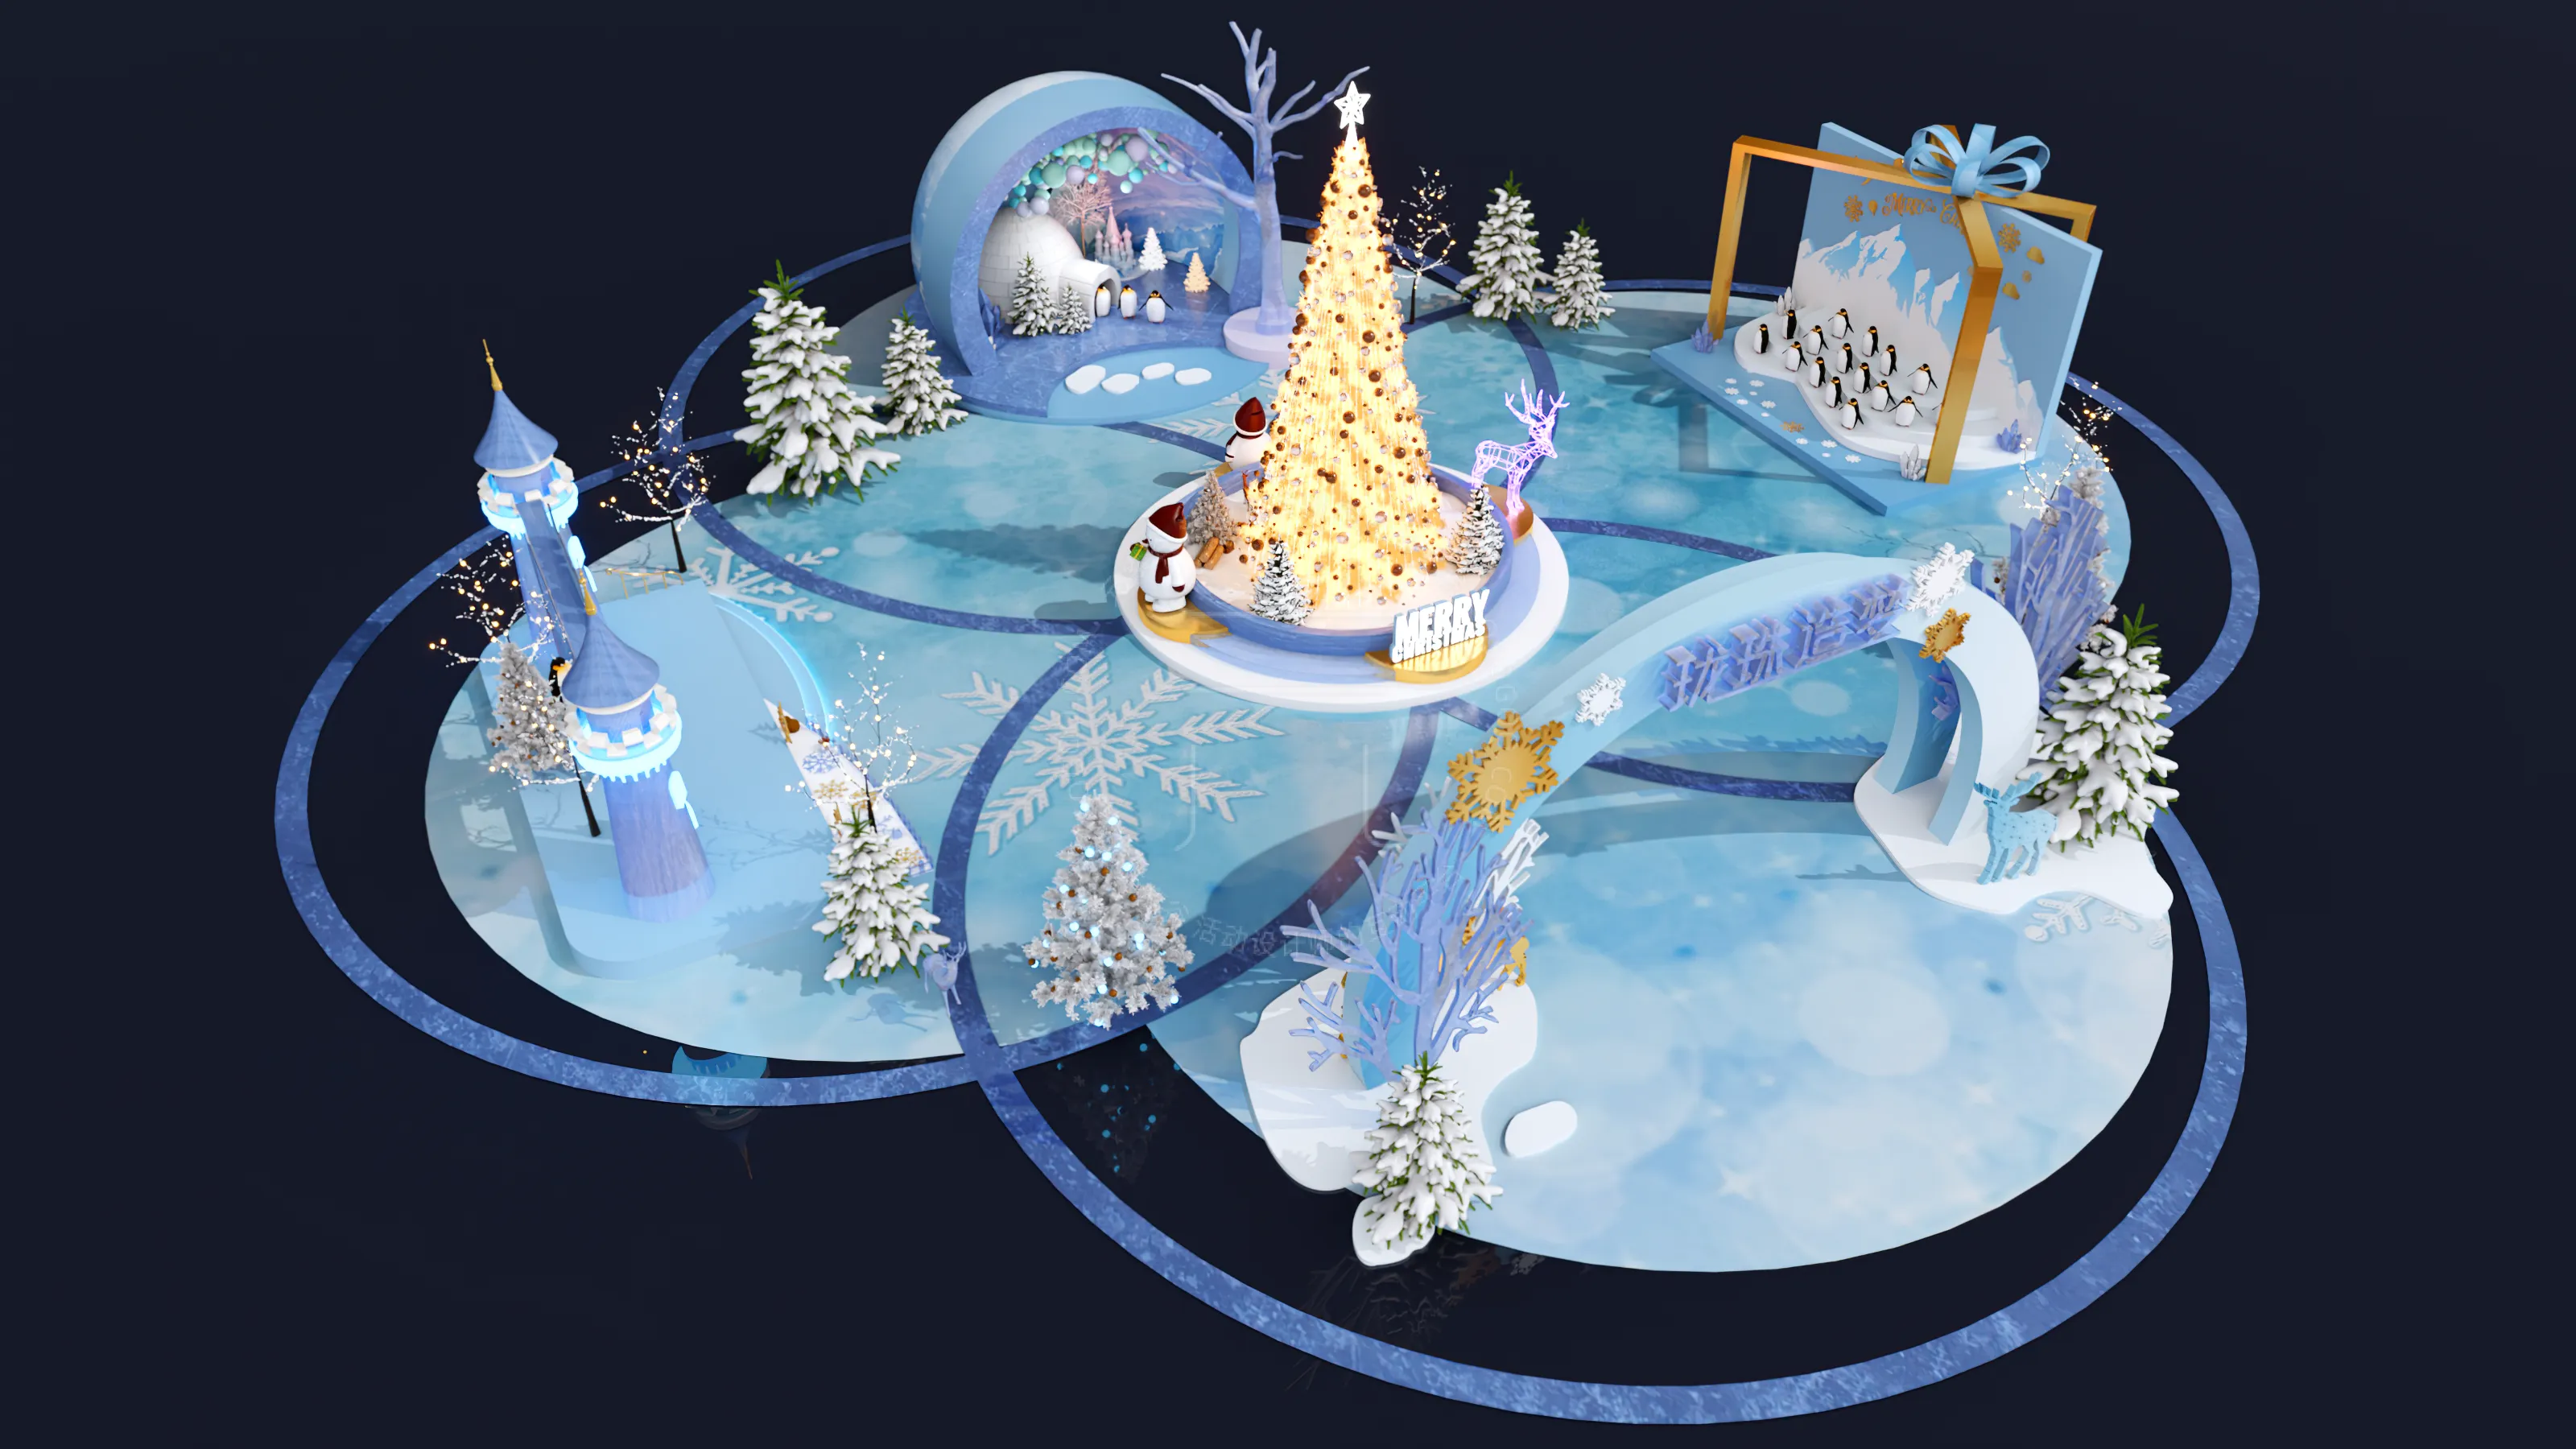 冰雪圣诞节主题全案设计